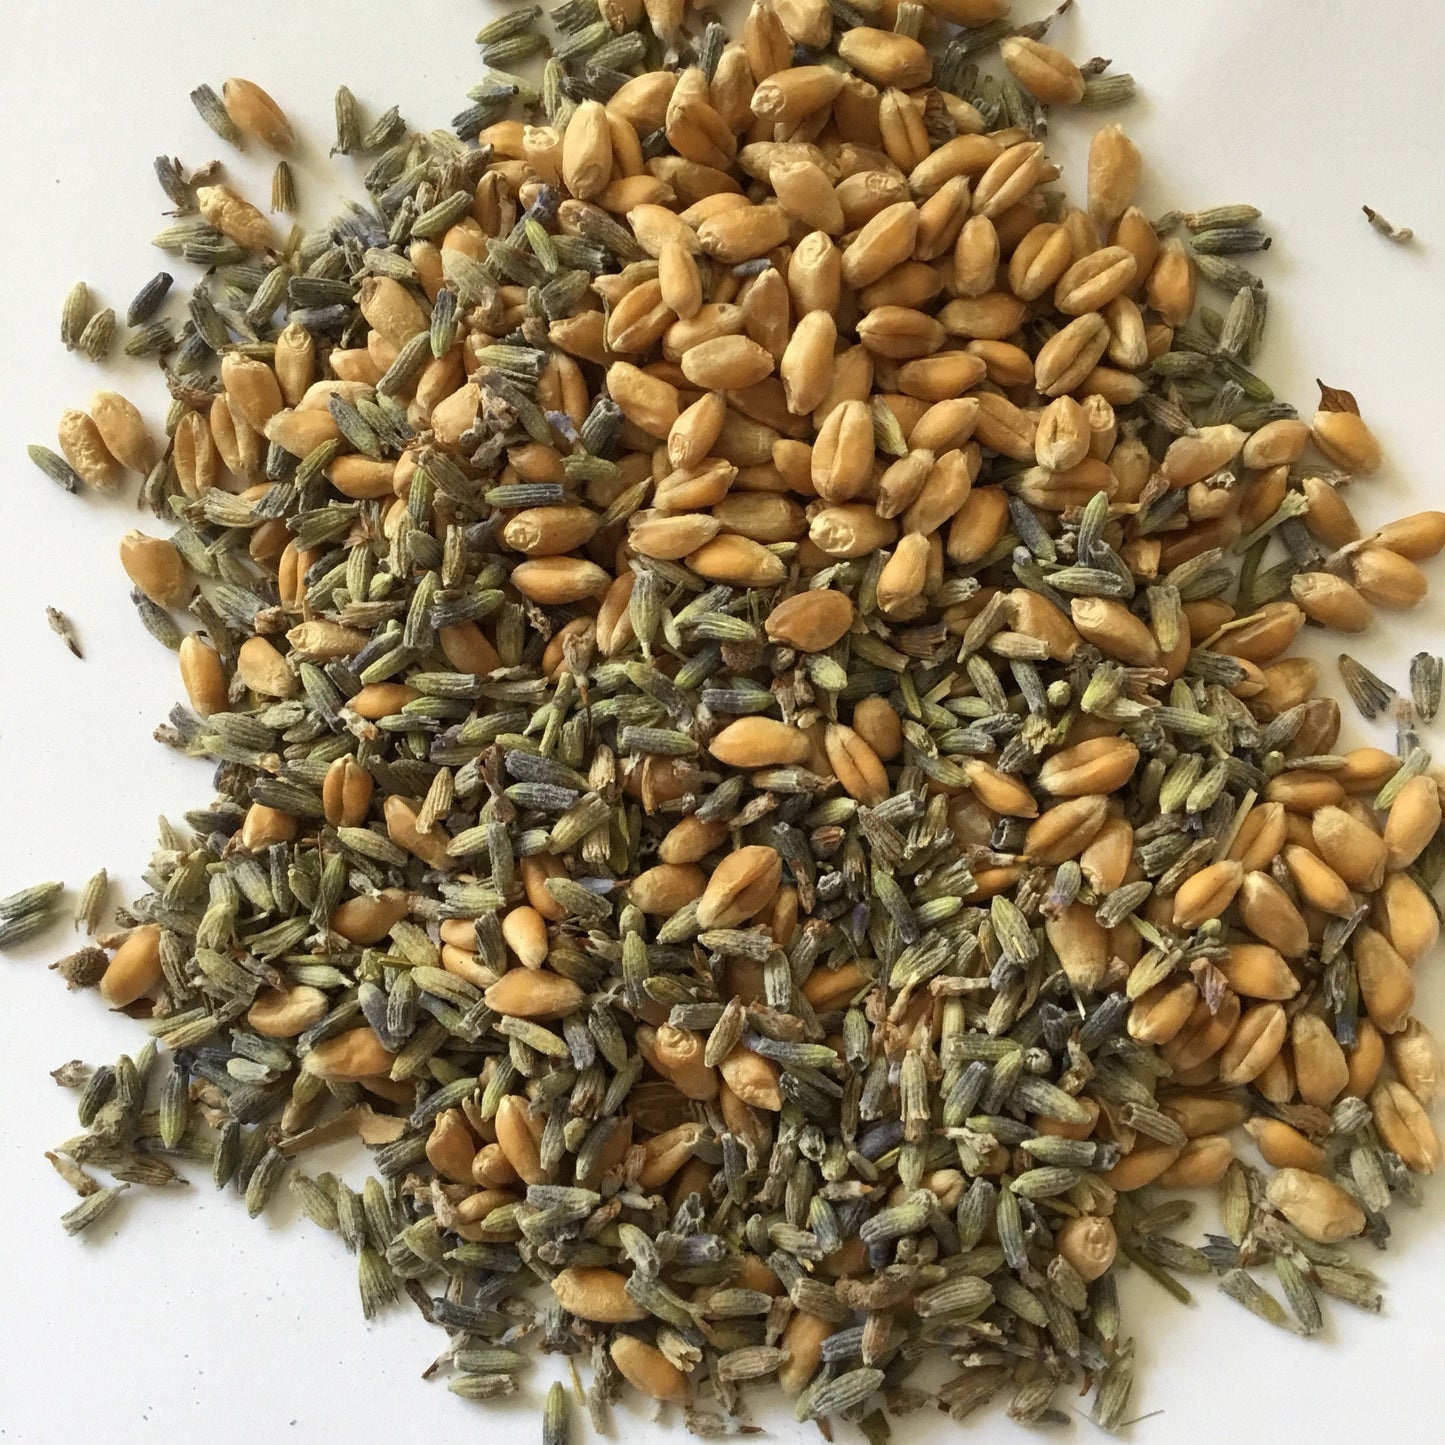 Lavender ingredients for Lavender heating pad, hemp leaf printed wheat bag 